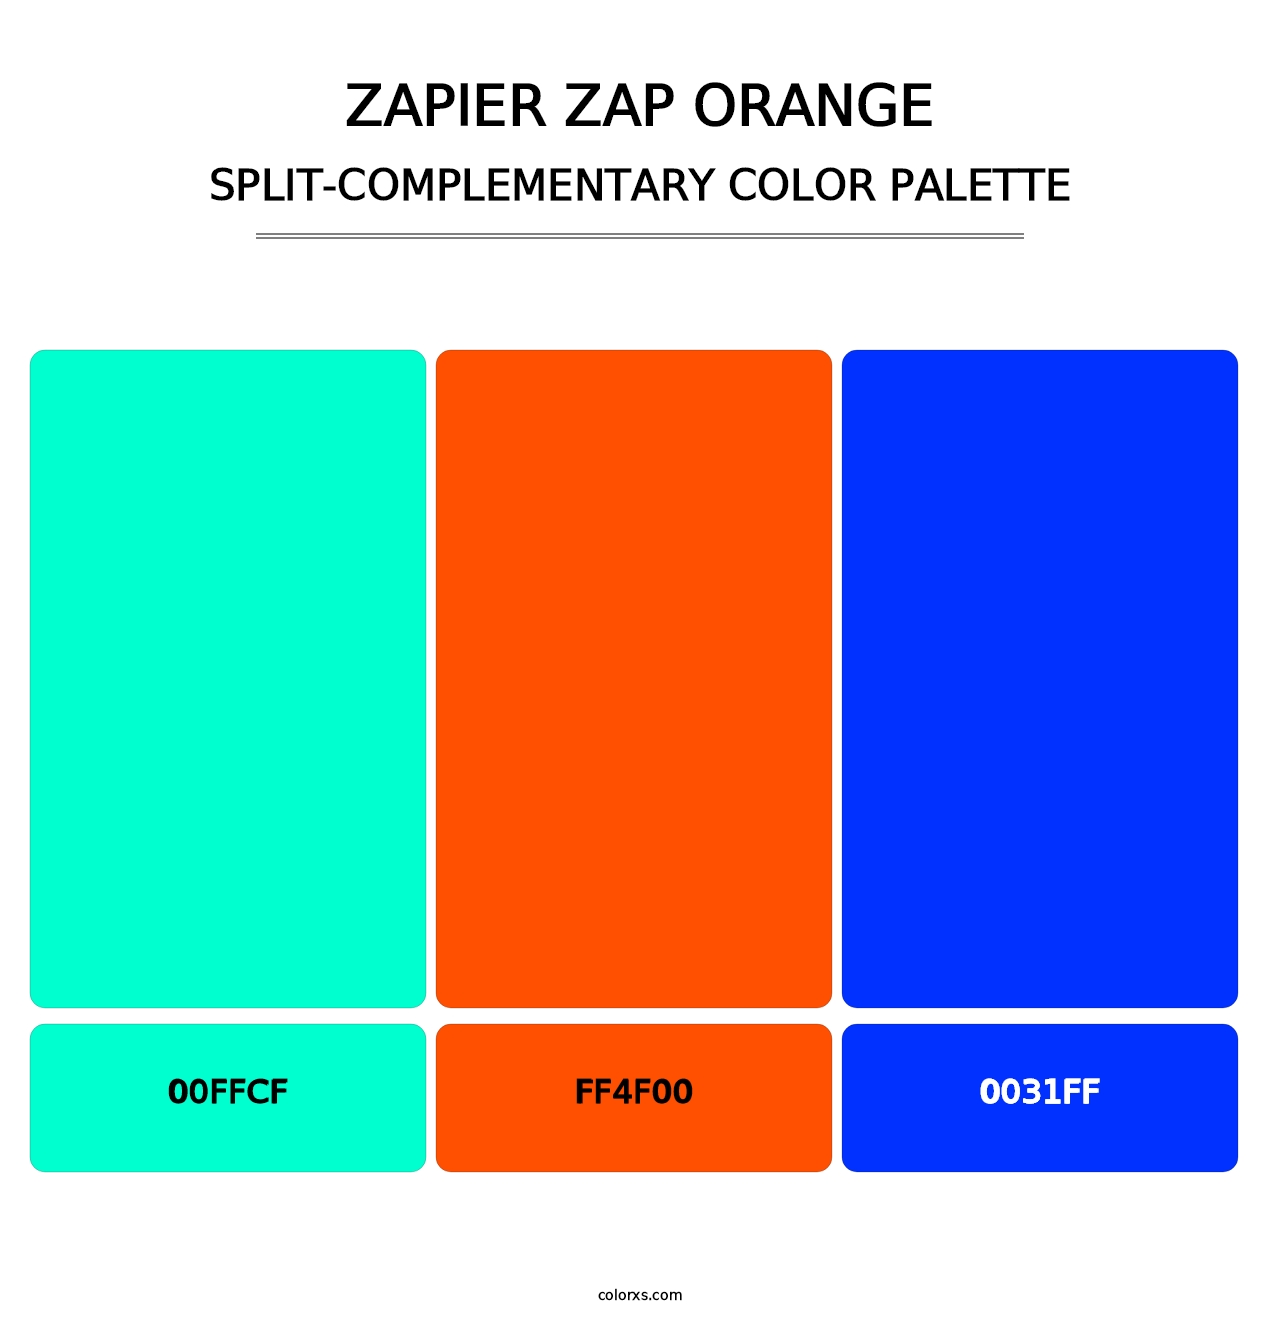 Zapier Zap Orange - Split-Complementary Color Palette